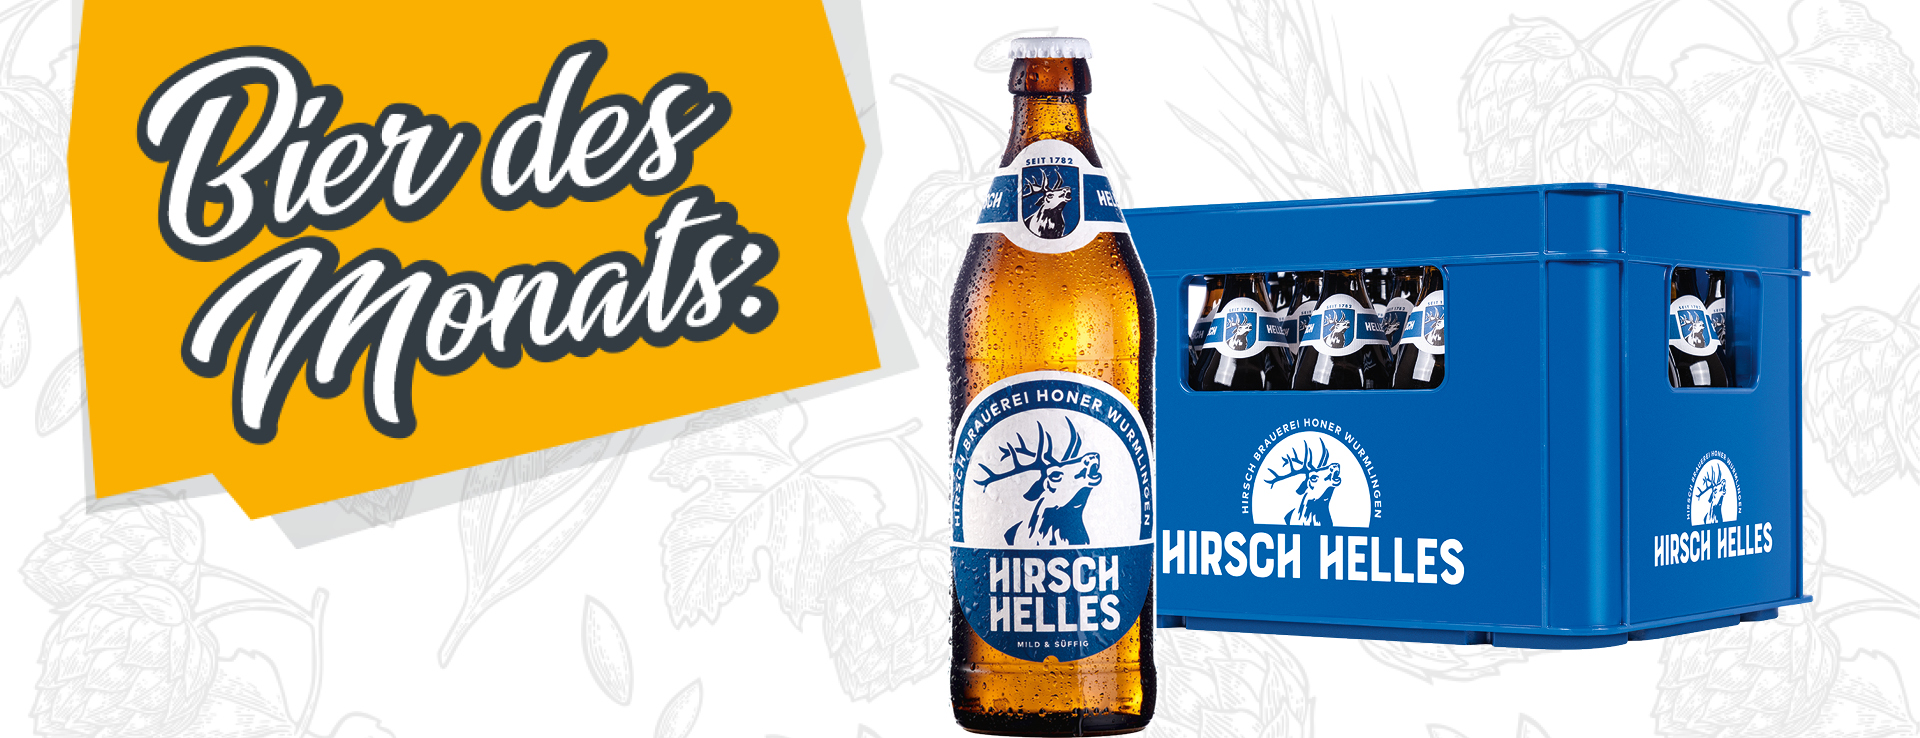 Bier des Monats März Hirsch Helles